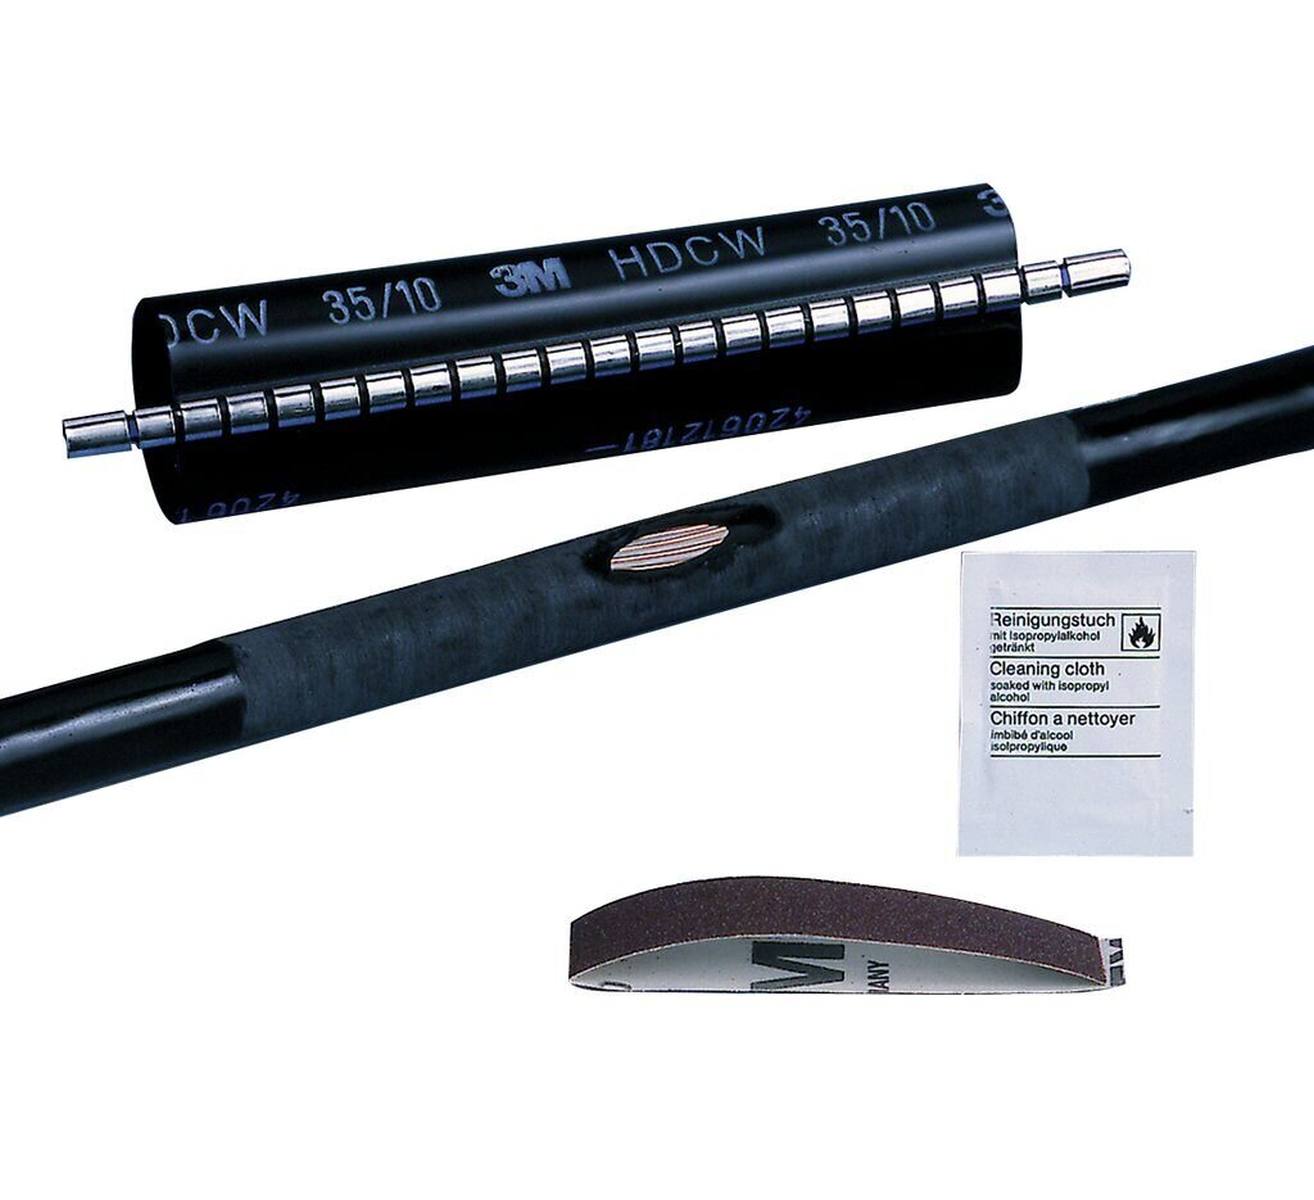  3M HDCW lämpökutistuva korjausholkki, musta, 80/25 mm, 250 mm